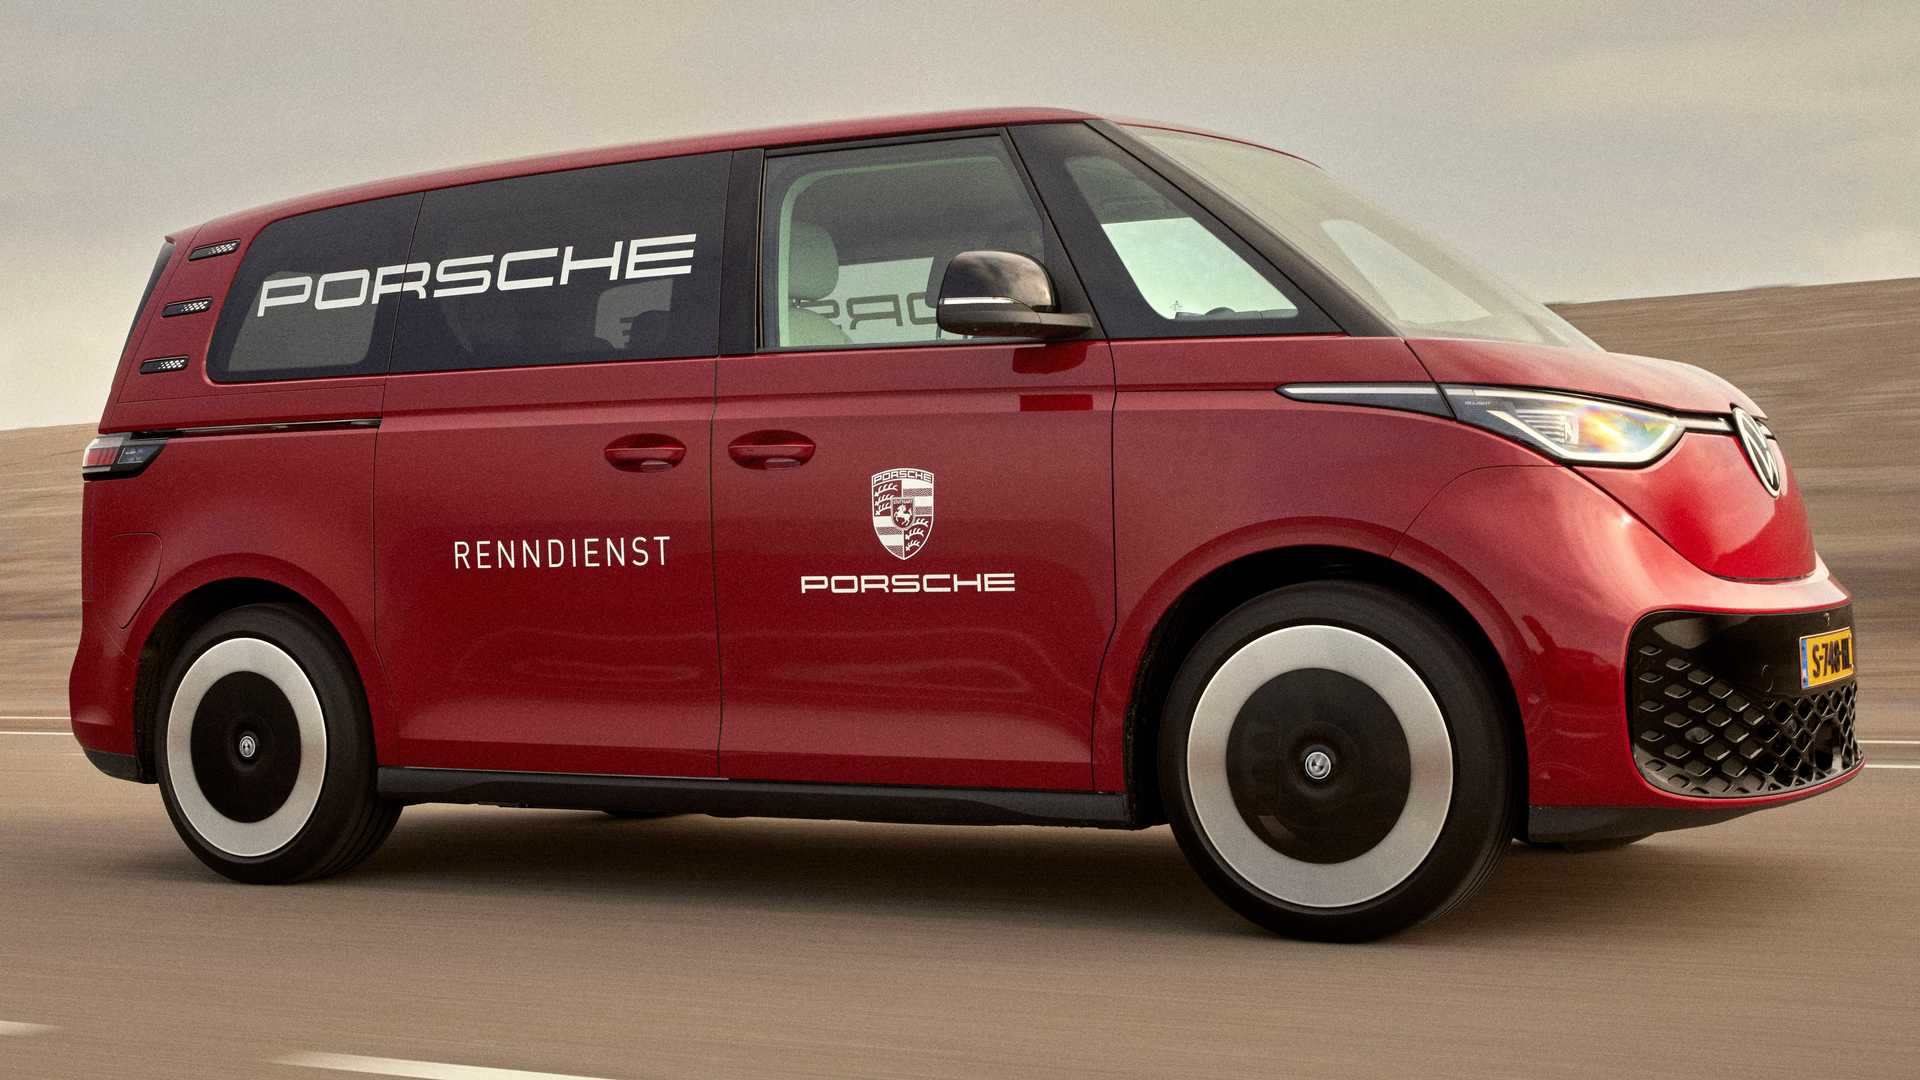 Porsche präsentiert den vom Renndienst inspirierten Volkswagen ID. Buzz EV bei niederländischen Händlern